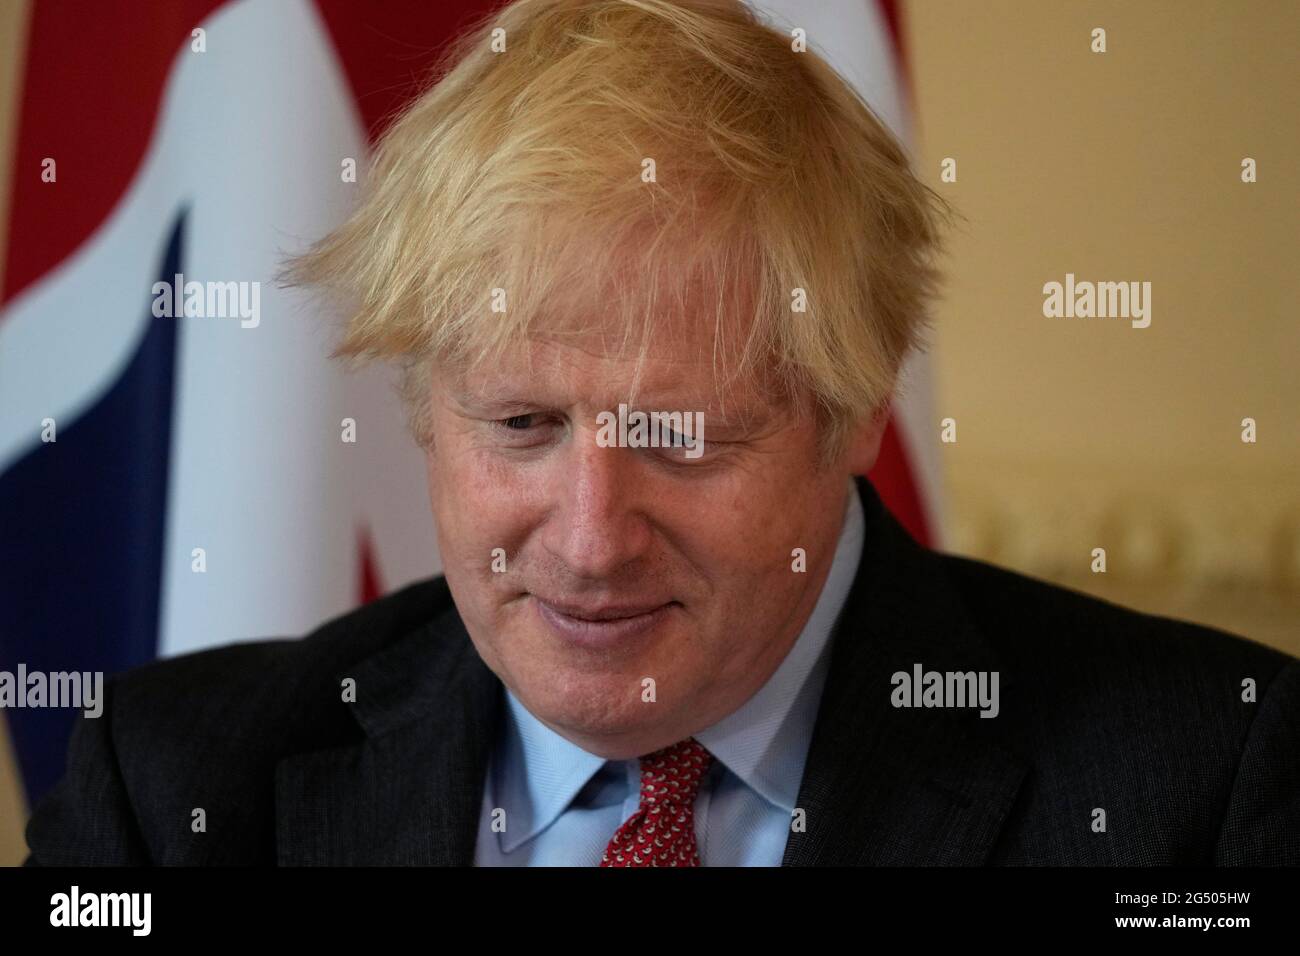 Primo Ministro Boris Johnson con il primo Ministro della Libia, Abdul Hamid Dbeibah (non visto), all'interno del 10 Downing Street, Londra, in vista di un incontro bilaterale. Data immagine: Giovedì 24 giugno 2021. Foto Stock